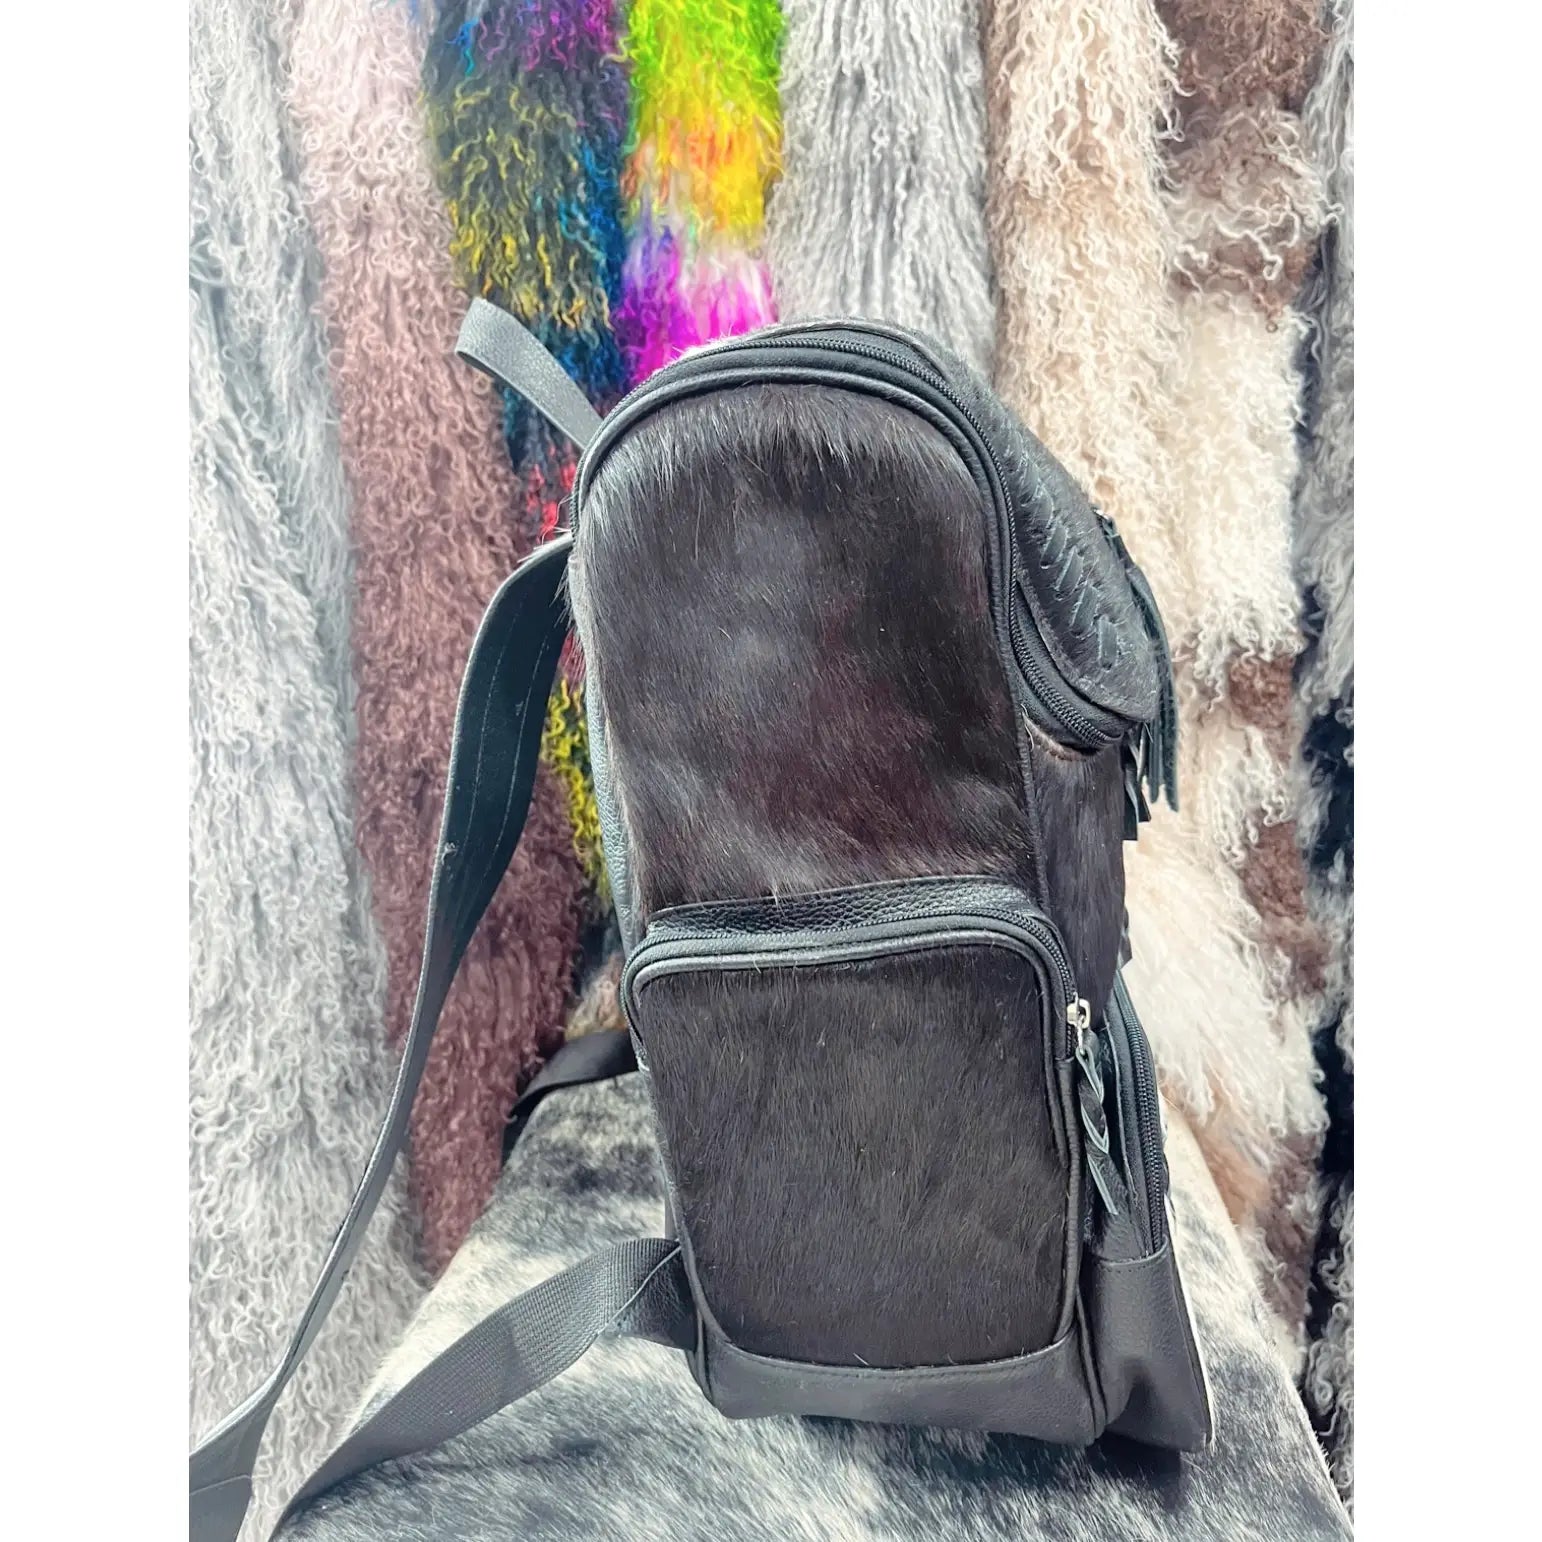 Cowhide Diaper Bag Backpack #1 – Cowbabes Designs